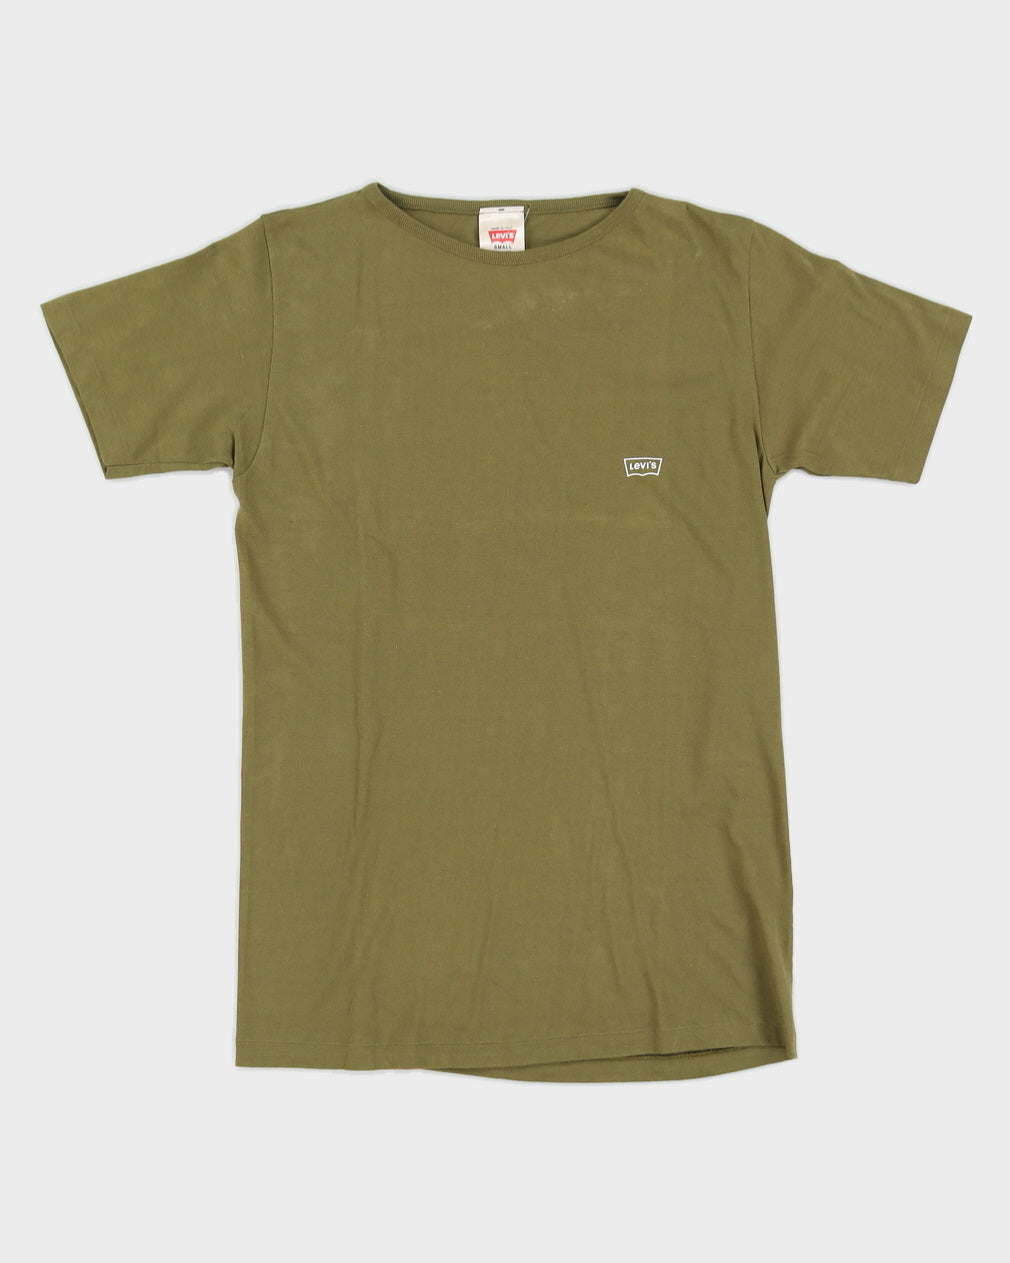 Vintage 70s Levi's Green Plain T-Shirt -S